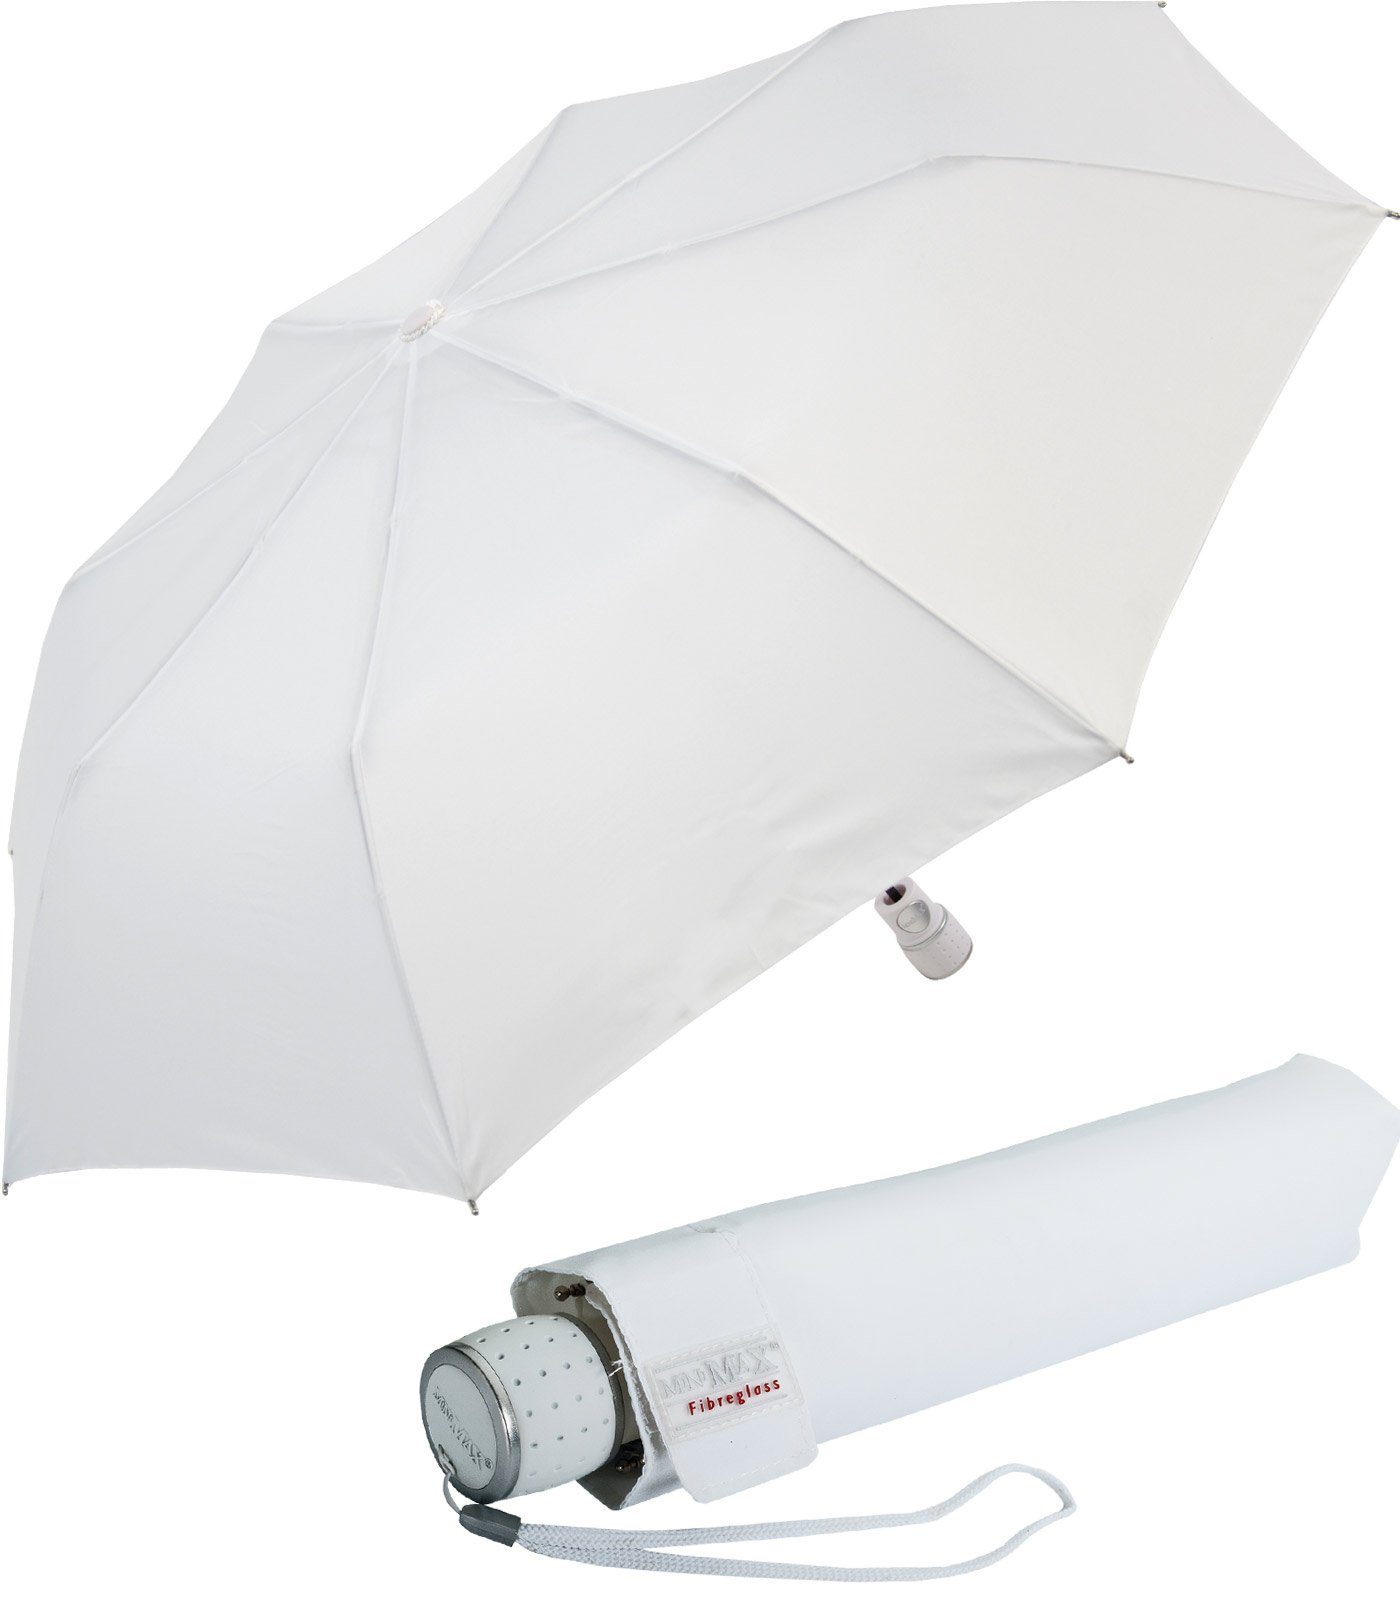 mit miniMAX® zuverlässige uni, Begleiter Taschenregenschirm windsicher Auf-Automatik Impliva weiß der